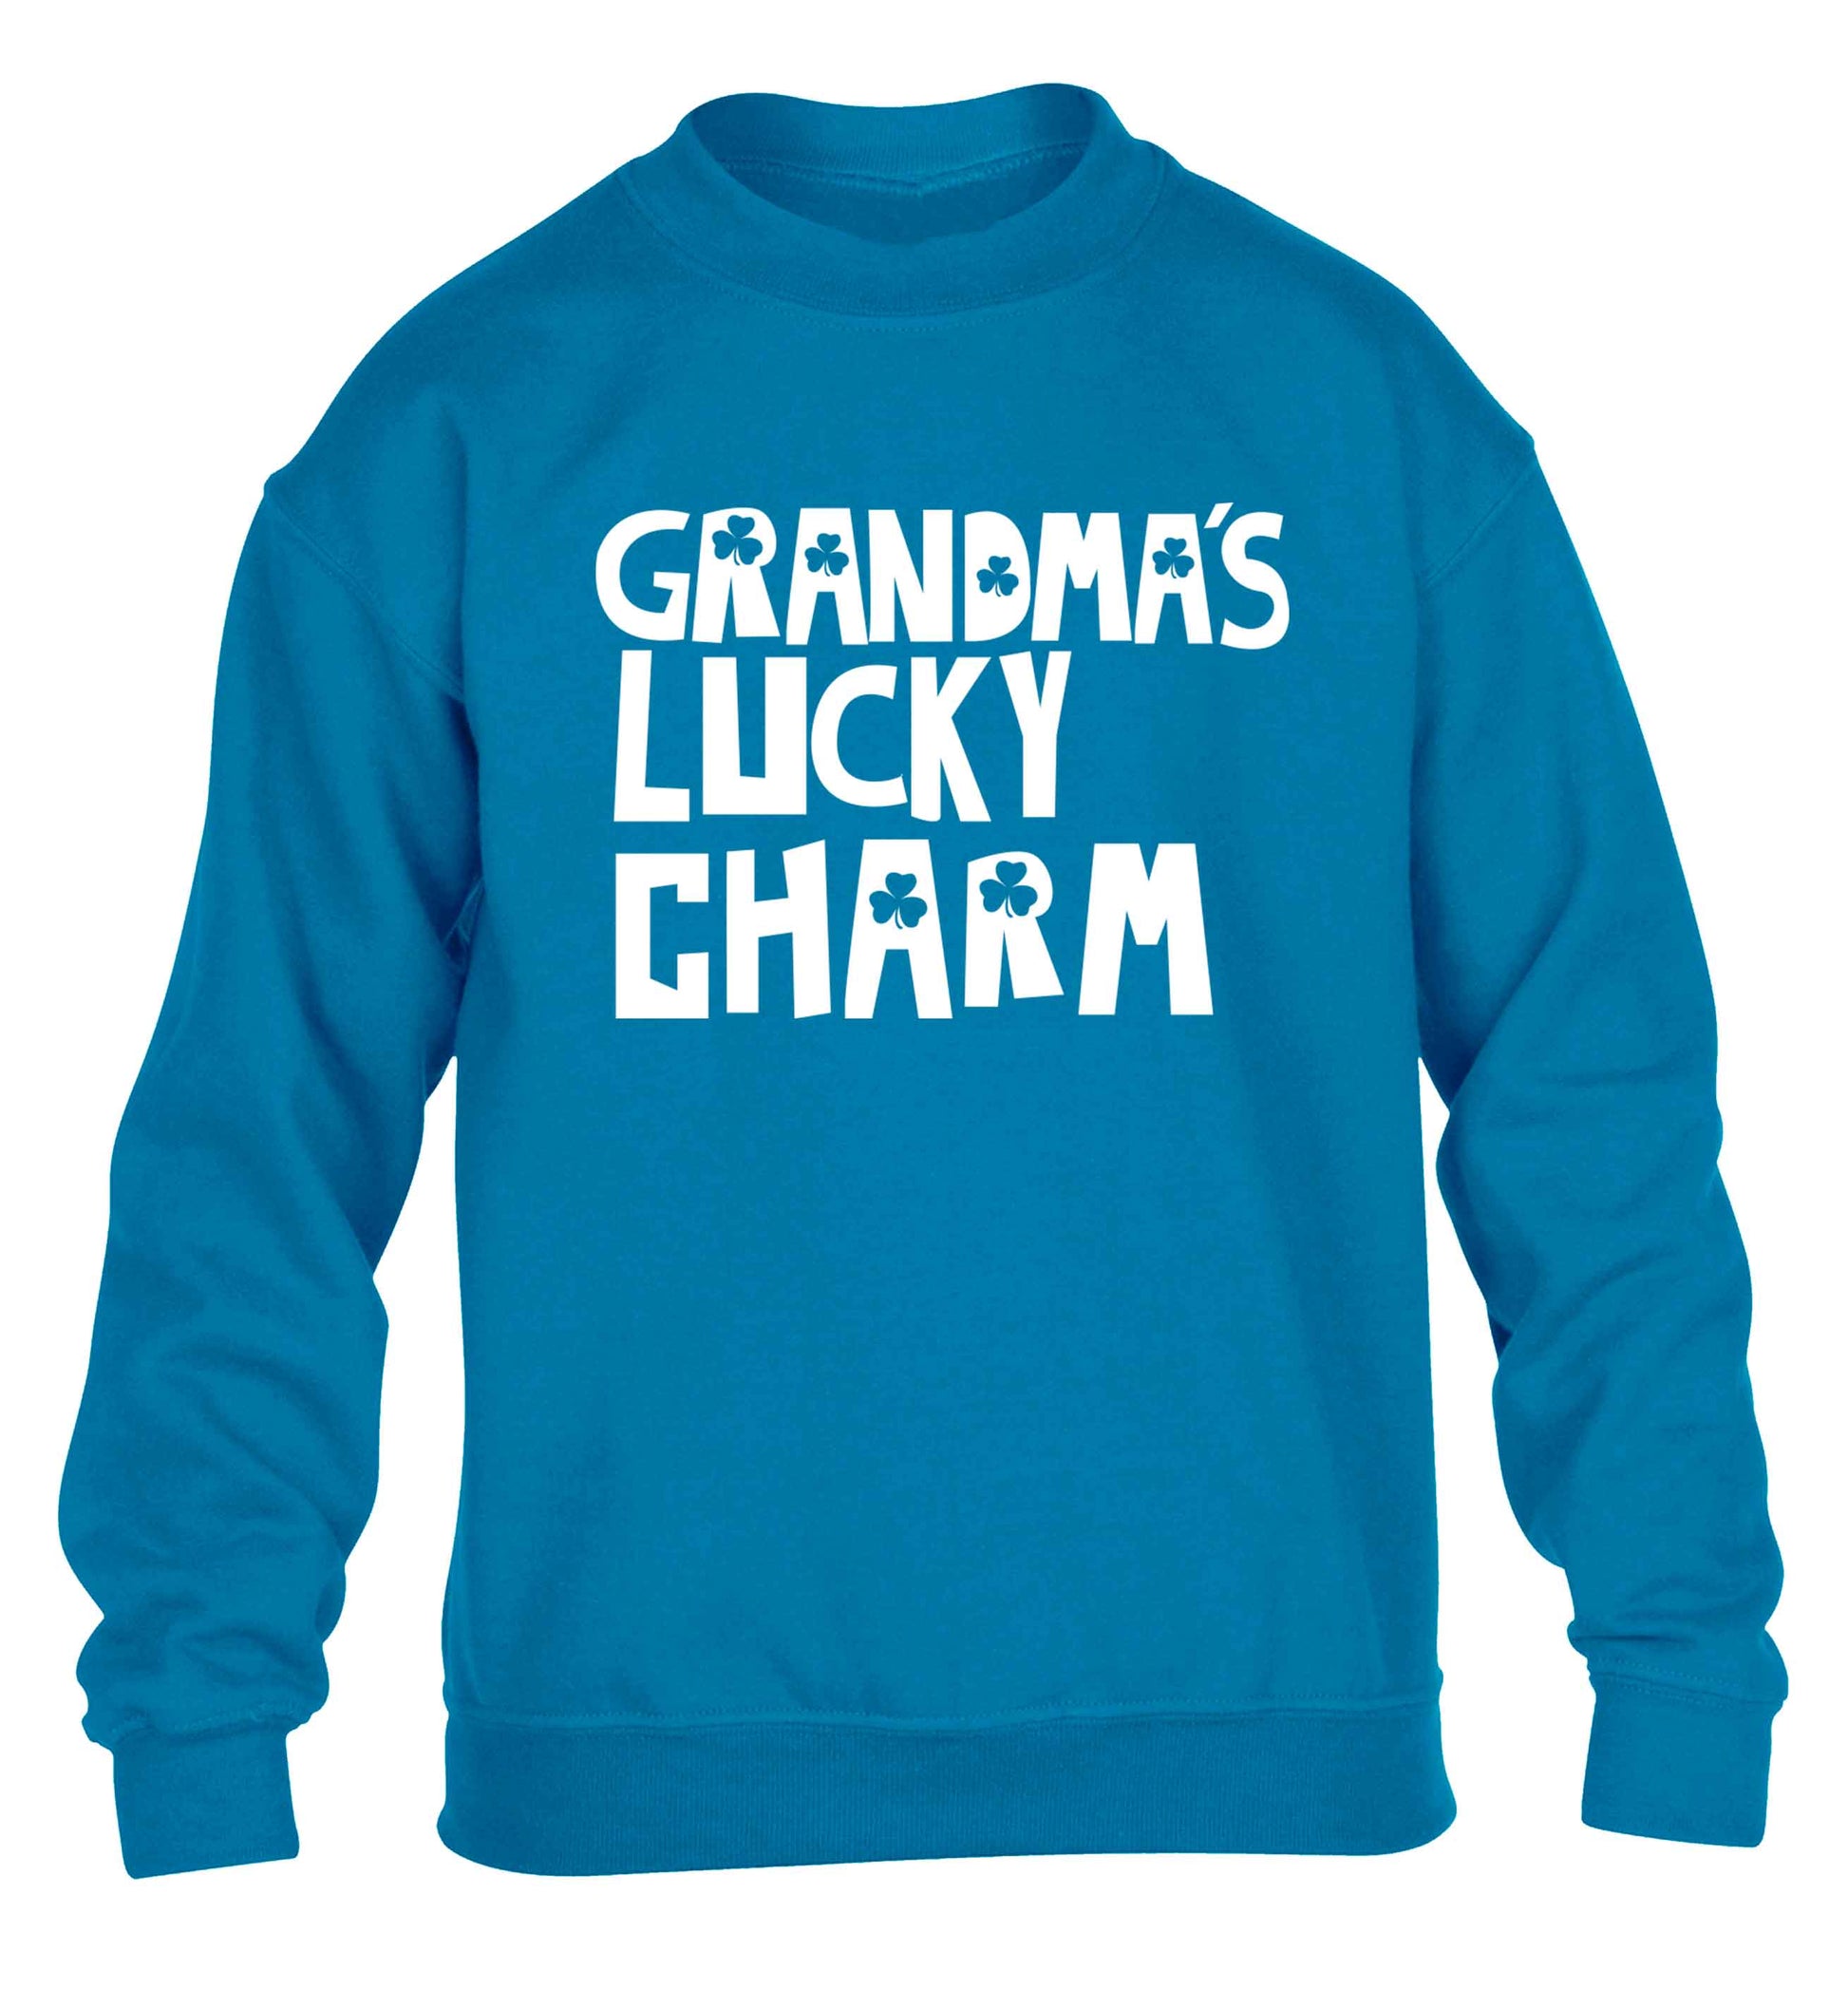 Grandma's lucky charm children's blue sweater 12-13 Years